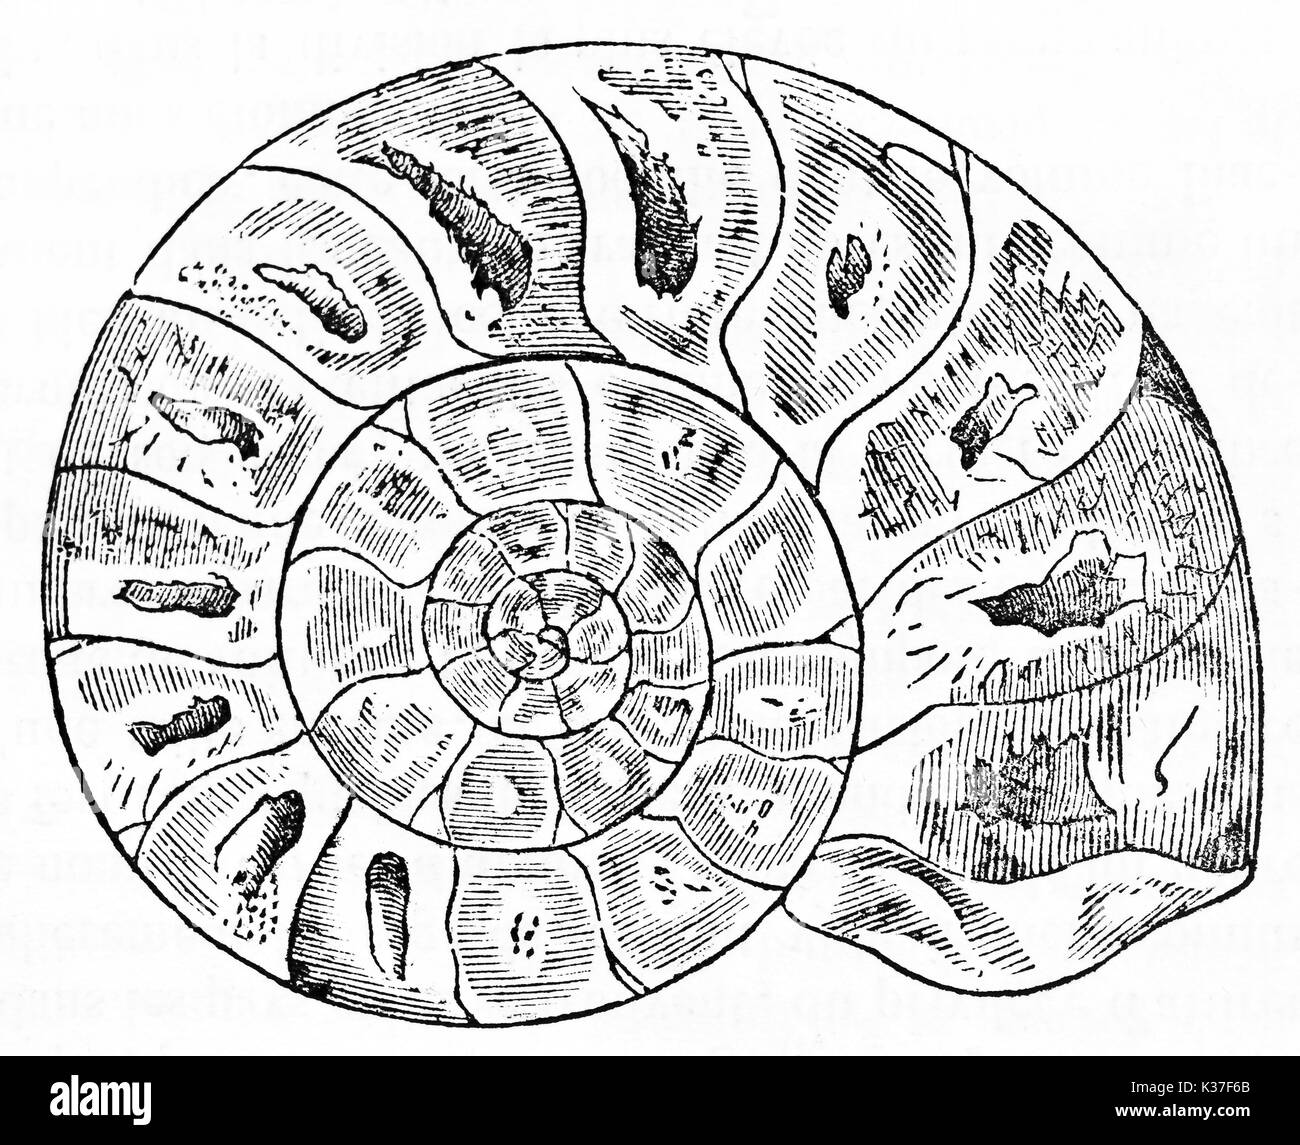 Antiguos fósiles de ammonites representadas en un estilo gráfico mínimas y aisladas. Ilustración antigua de autor desconocido publicado en el Magasin pintoresco París 1834 Foto de stock